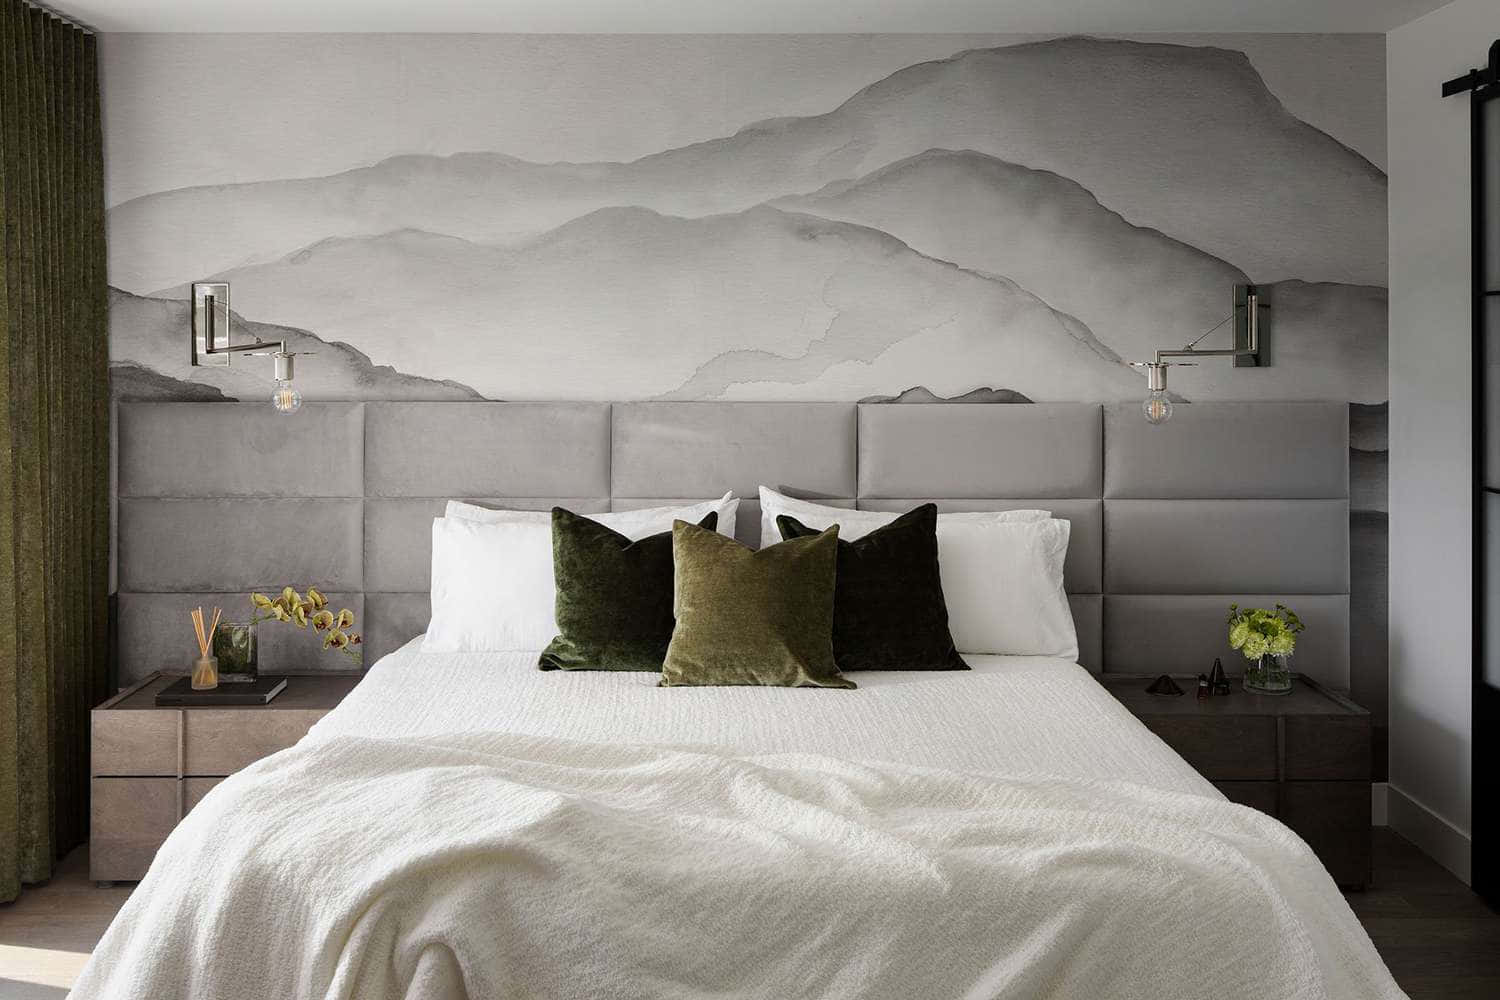 Modern Mountain Mural Bedroom Design Wallpaper